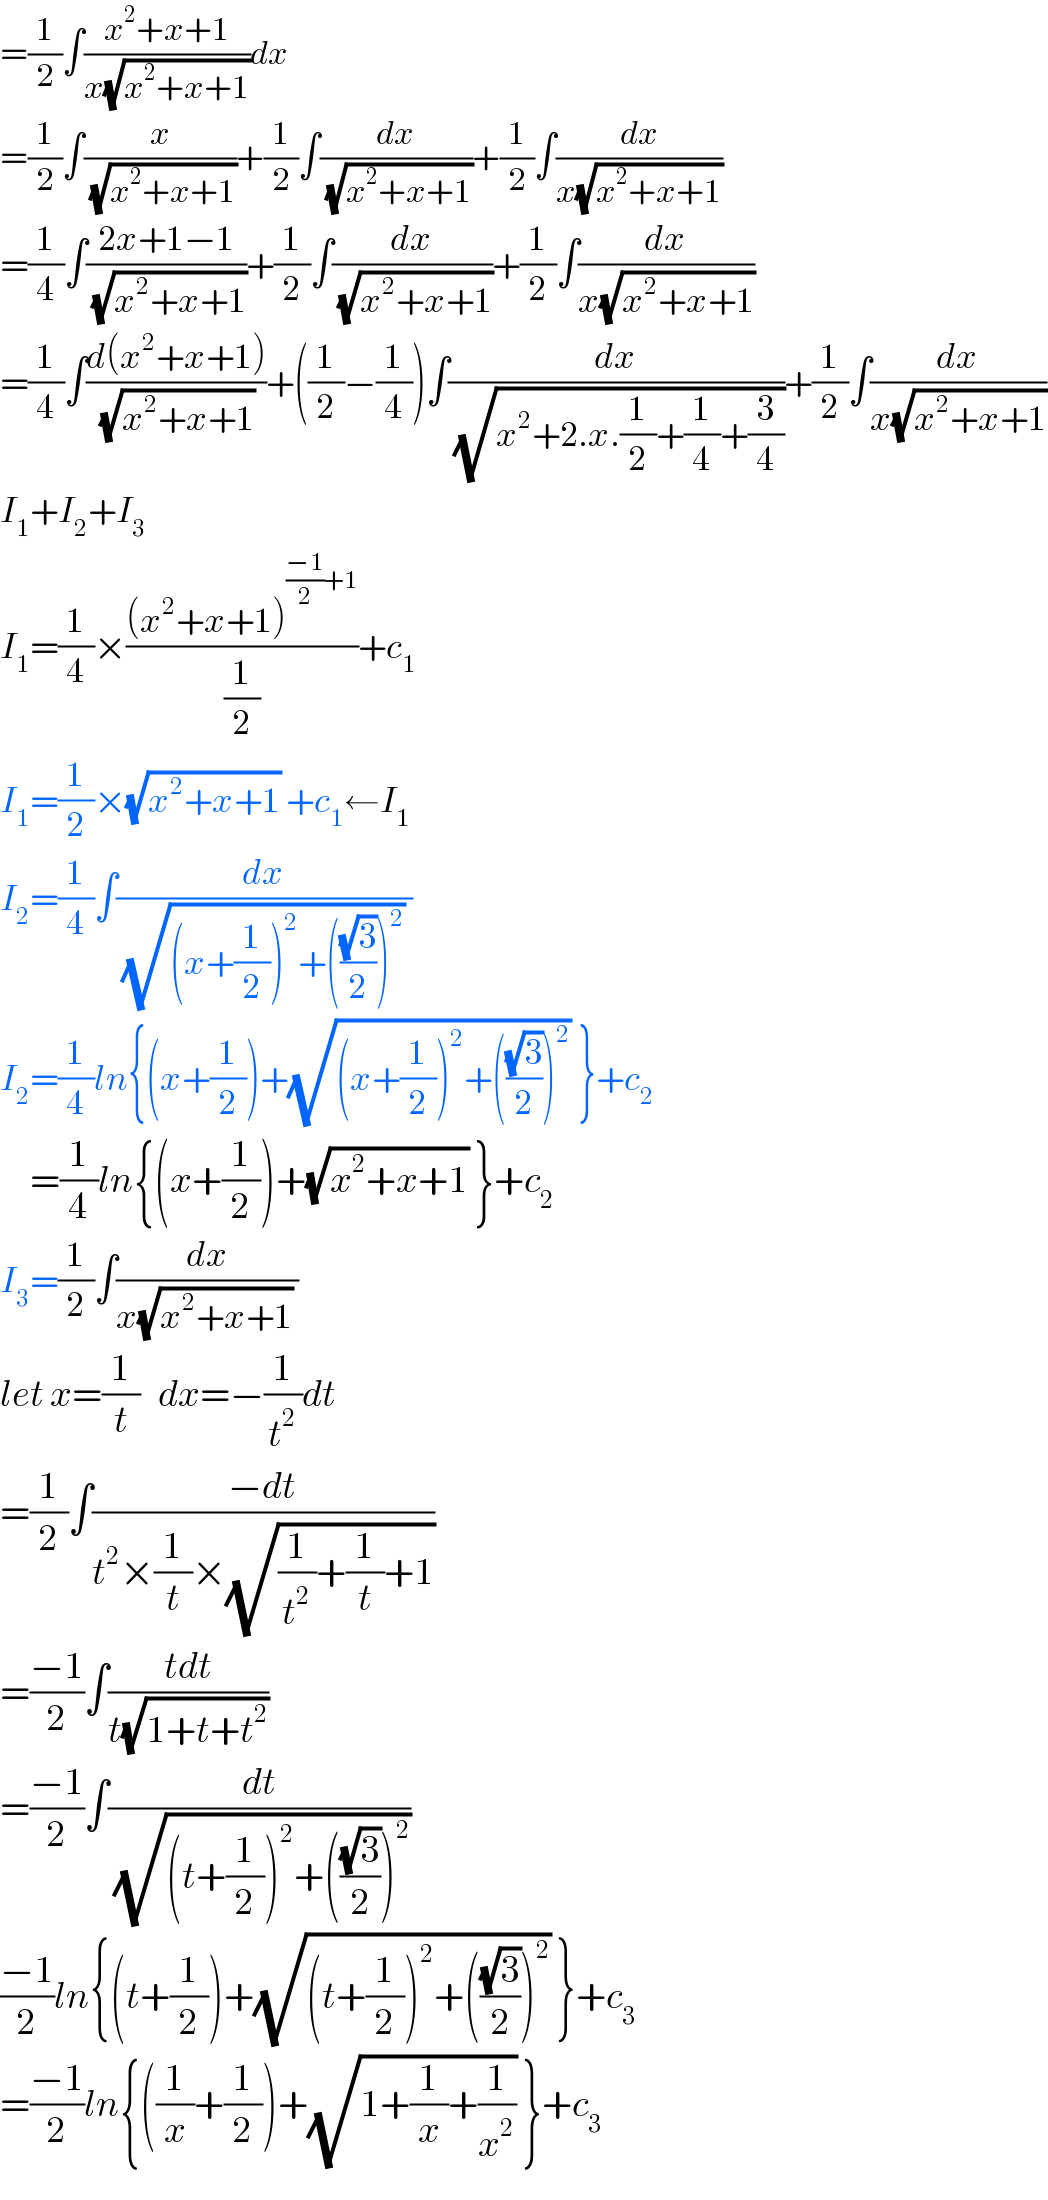 =(1/2)∫((x^2 +x+1)/(x(√(x^2 +x+1))))dx  =(1/2)∫(x/(√(x^2 +x+1)))+(1/2)∫(dx/(√(x^2 +x+1)))+(1/2)∫(dx/(x(√(x^2 +x+1))))  =(1/4)∫((2x+1−1)/(√(x^2 +x+1)))+(1/2)∫(dx/(√(x^2 +x+1)))+(1/2)∫(dx/(x(√(x^2 +x+1))))  =(1/4)∫((d(x^2 +x+1))/(√(x^2 +x+1)))+((1/2)−(1/4))∫(dx/(√(x^2 +2.x.(1/2)+(1/4)+(3/4))))+(1/2)∫(dx/(x(√(x^2 +x+1))))  I_1 +I_2 +I_3   I_1 =(1/4)×(((x^2 +x+1)^(((−1)/2)+1) )/(1/2))+c_1   I_1 =(1/2)×(√(x^2 +x+1)) +c_1 ←I_1   I_2 =(1/4)∫(dx/((√((x+(1/2))^2 +(((√3)/2))^2 )) ))  I_2 =(1/4)ln{(x+(1/2))+(√((x+(1/2))^2 +(((√3)/2))^2 )) }+c_2        =(1/4)ln{(x+(1/2))+(√(x^2 +x+1)) }+c_2   I_3 =(1/2)∫(dx/(x(√(x^2 +x+1)) ))  let x=(1/t)   dx=−(1/t^2 )dt  =(1/2)∫((−dt)/(t^2 ×(1/t)×(√((1/t^2 )+(1/t)+1))))  =((−1)/2)∫((tdt)/(t(√(1+t+t^2 ))))  =((−1)/2)∫(dt/(√((t+(1/2))^2 +(((√3)/2))^2 )))  ((−1)/2)ln{(t+(1/2))+(√((t+(1/2))^2 +(((√3)/2))^2 )) }+c_3   =((−1)/2)ln{((1/x)+(1/2))+(√(1+(1/x)+(1/x^2 ))) }+c_3   